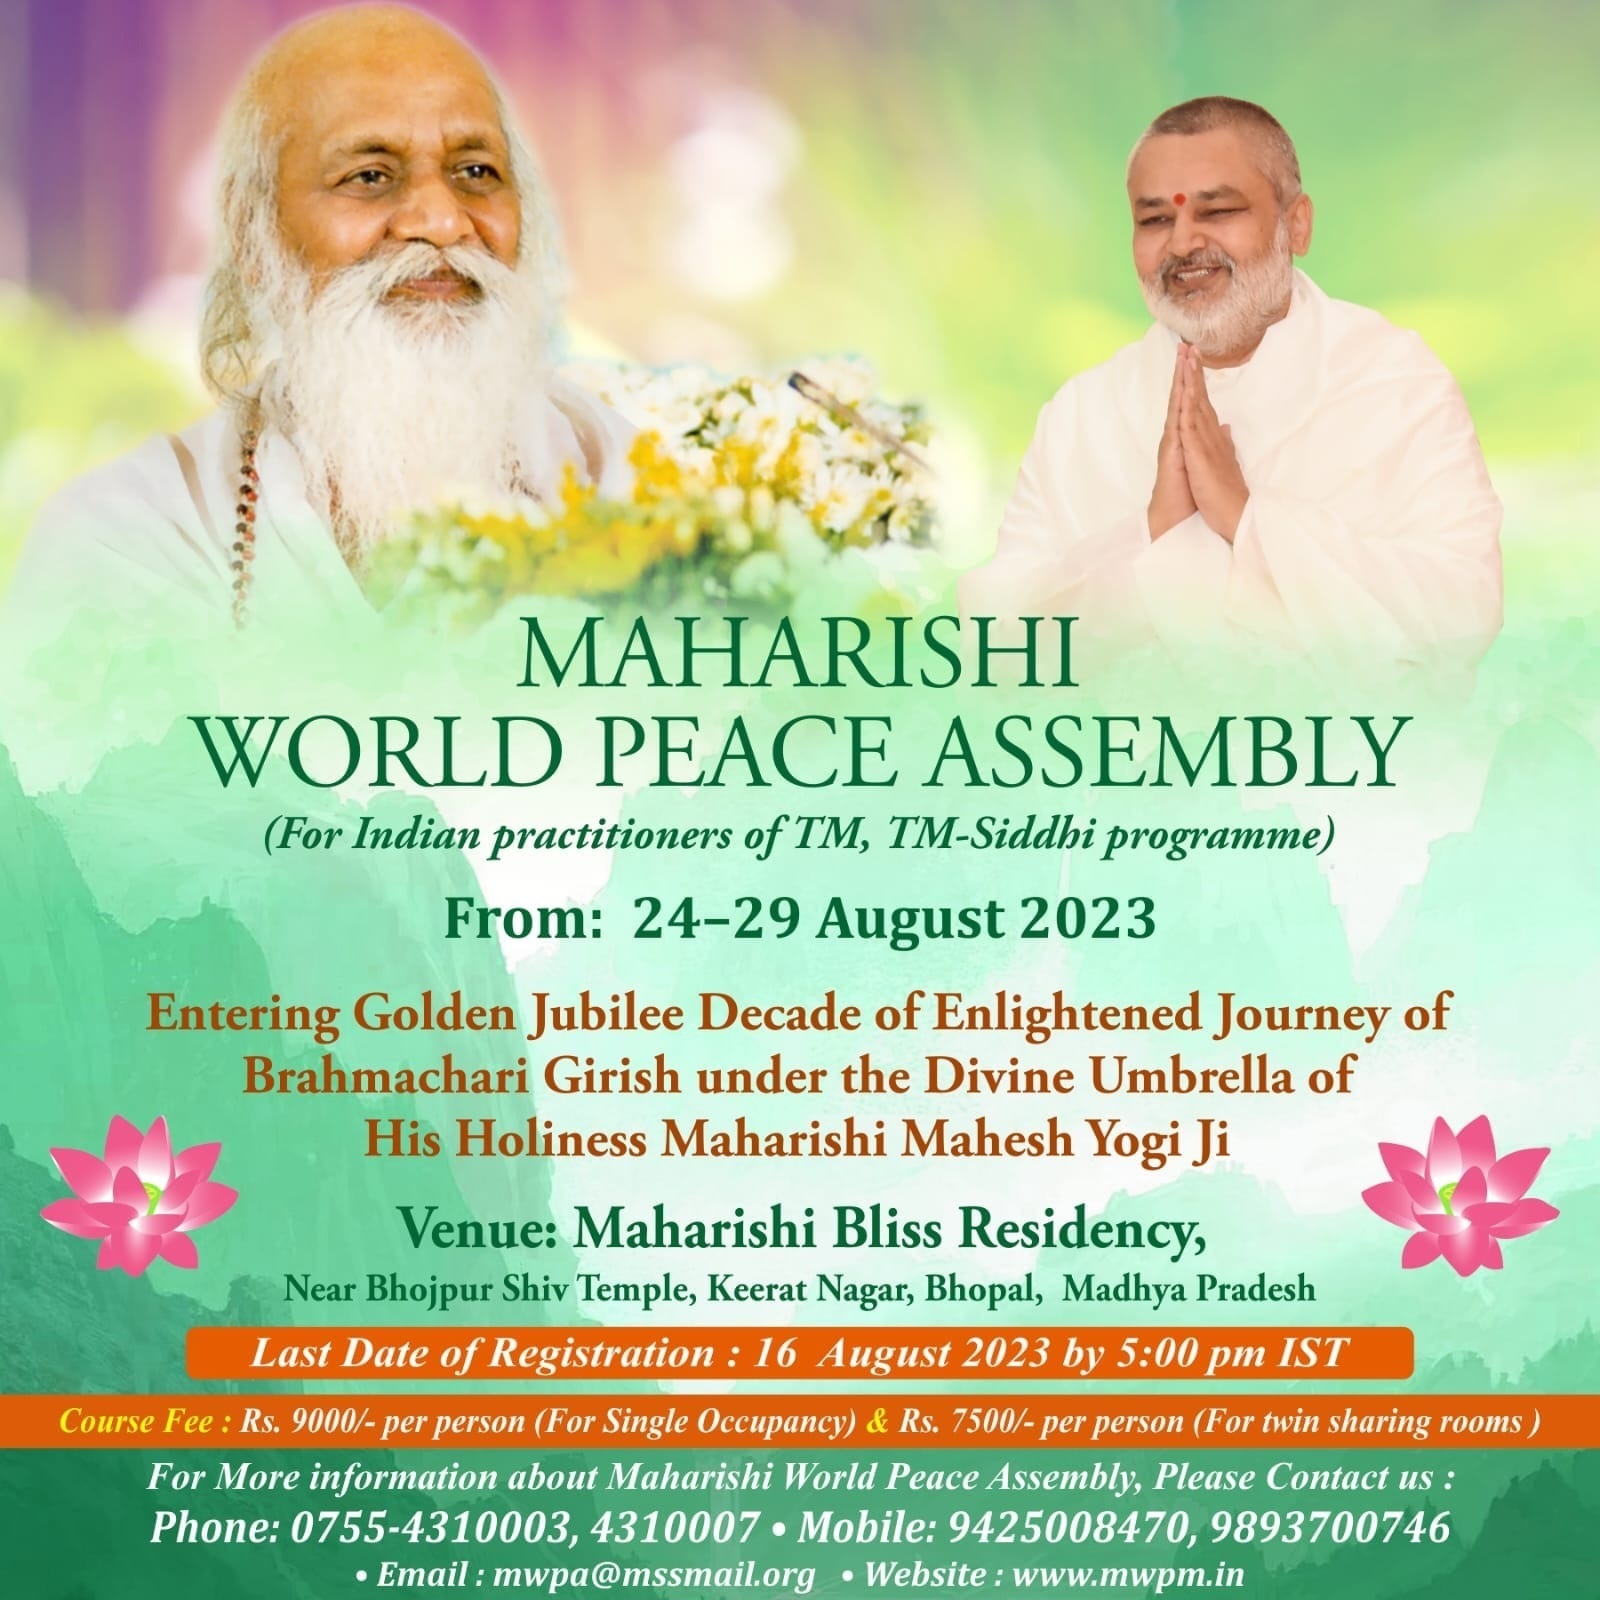 MAHARISHI WORLD PEACE ASSEMBLY